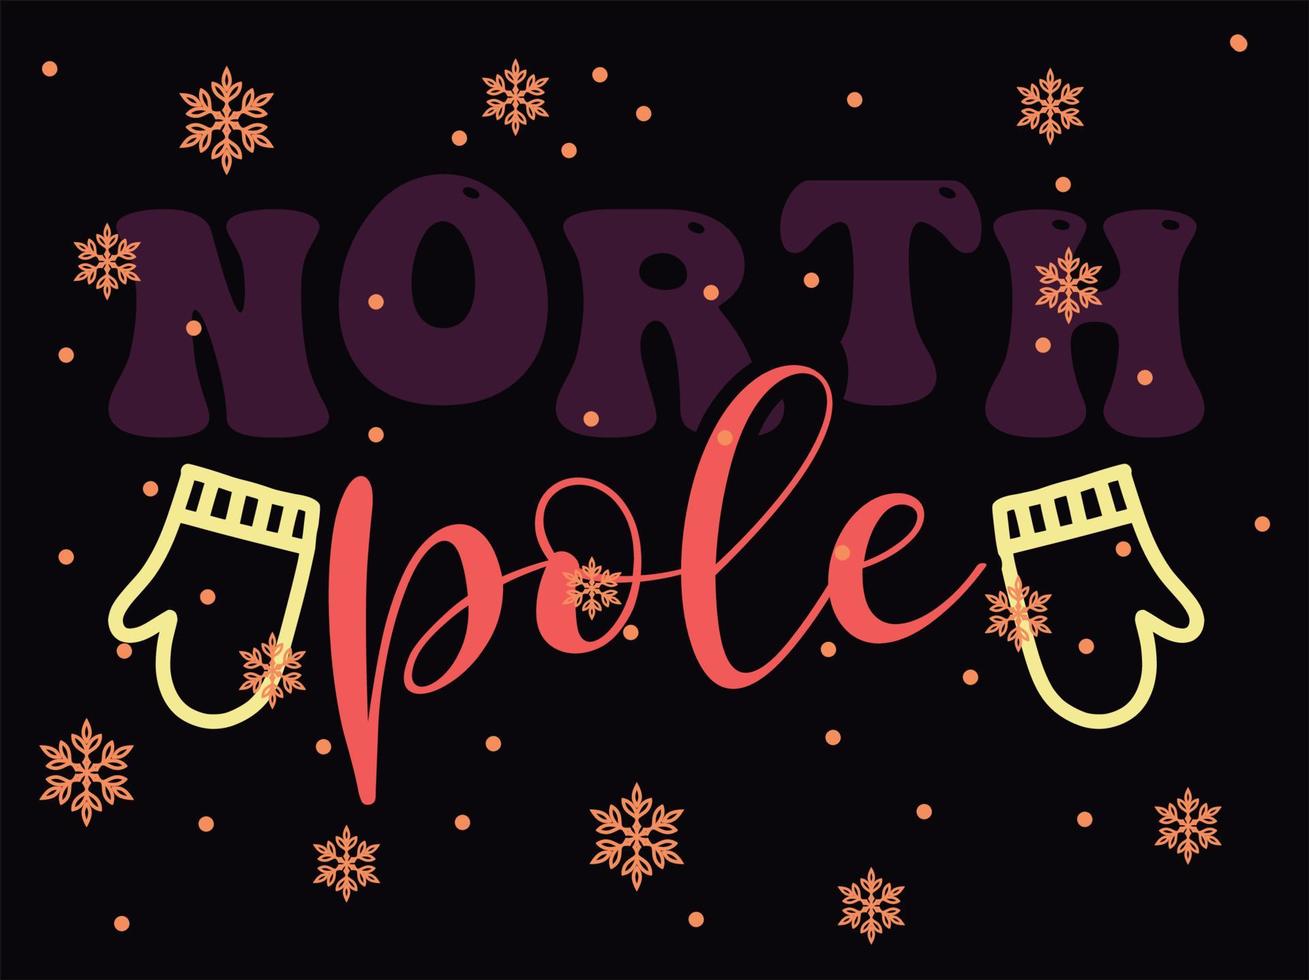 nord polo 03 allegro Natale e contento vacanze tipografia impostato vettore